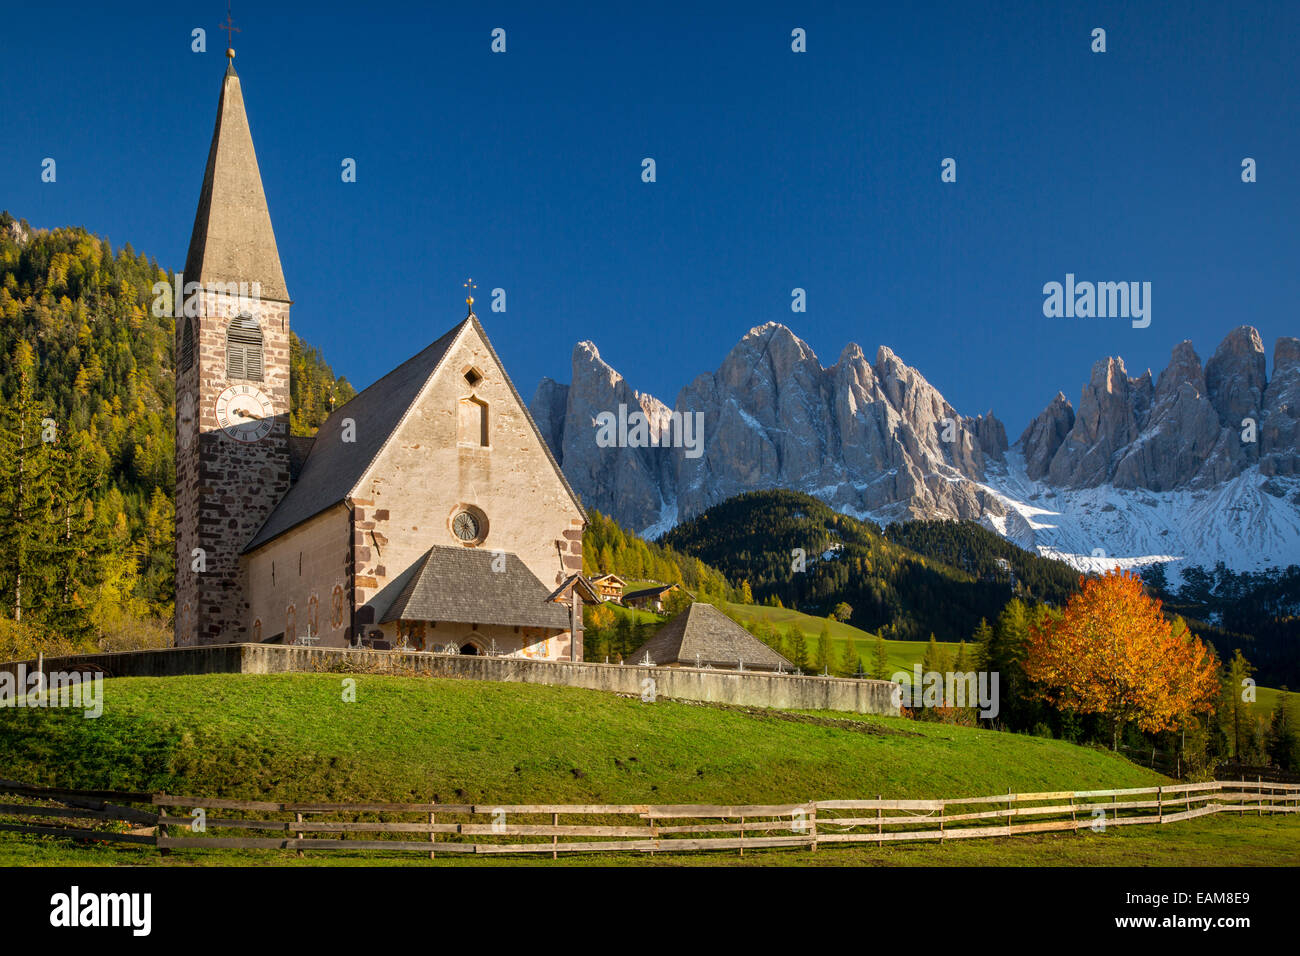 Santa Maddelena below Geisler Spitzen in the Dolomites, Val di Funes, Trentino-Alto-Adige, Italy Stock Photo